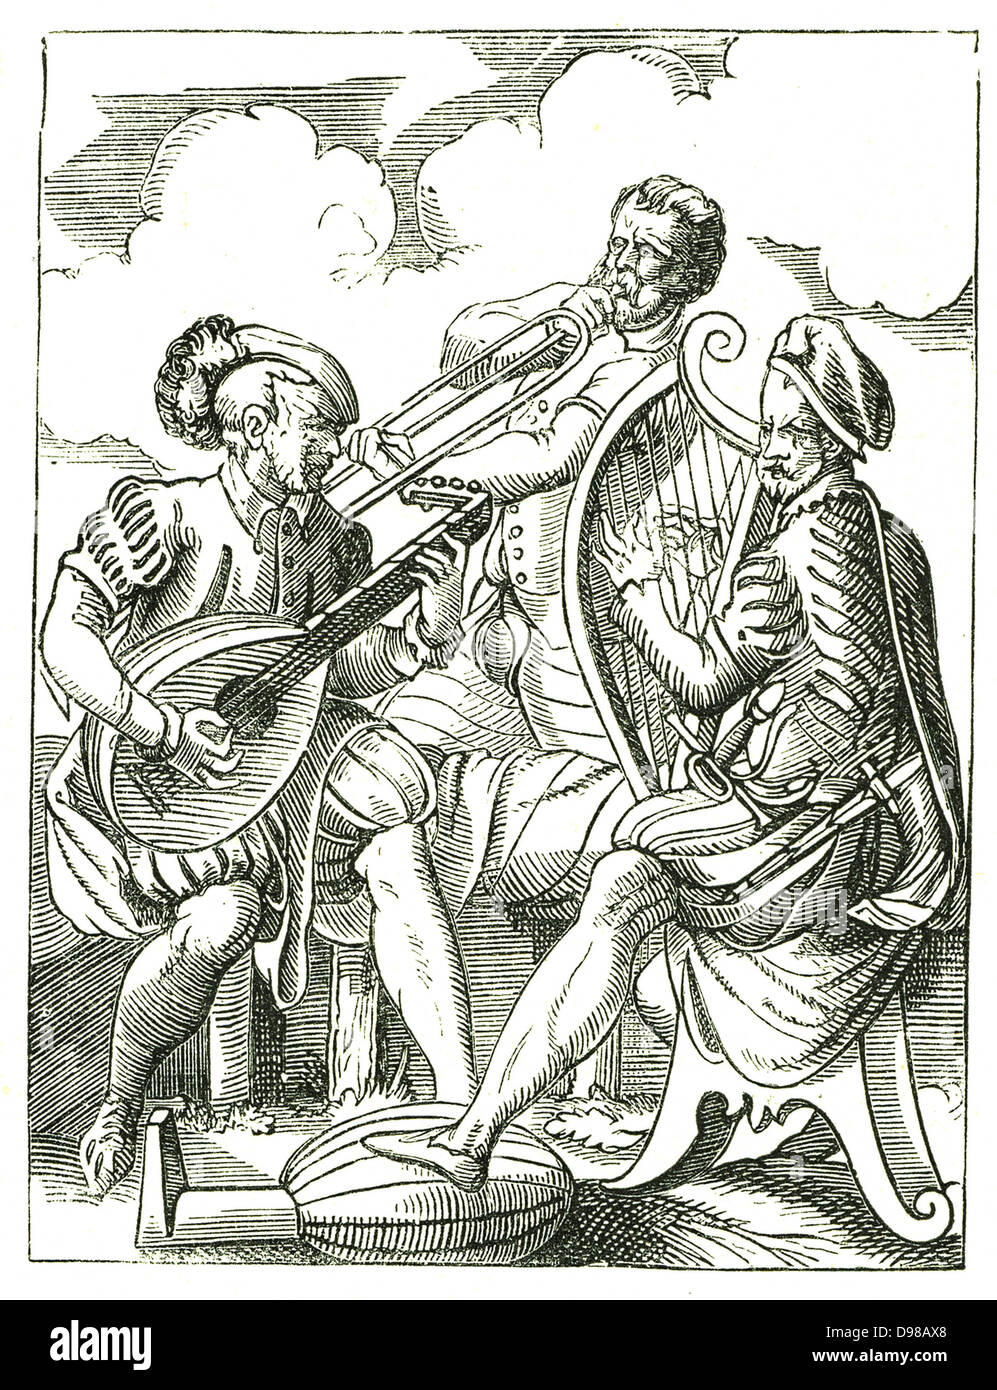 Des musiciens allemands, luth, gauche Clarsach (harpe celtique) et de l'avertisseur sonore. Gravure sur bois par Jost Amman (1535-1591). Banque D'Images